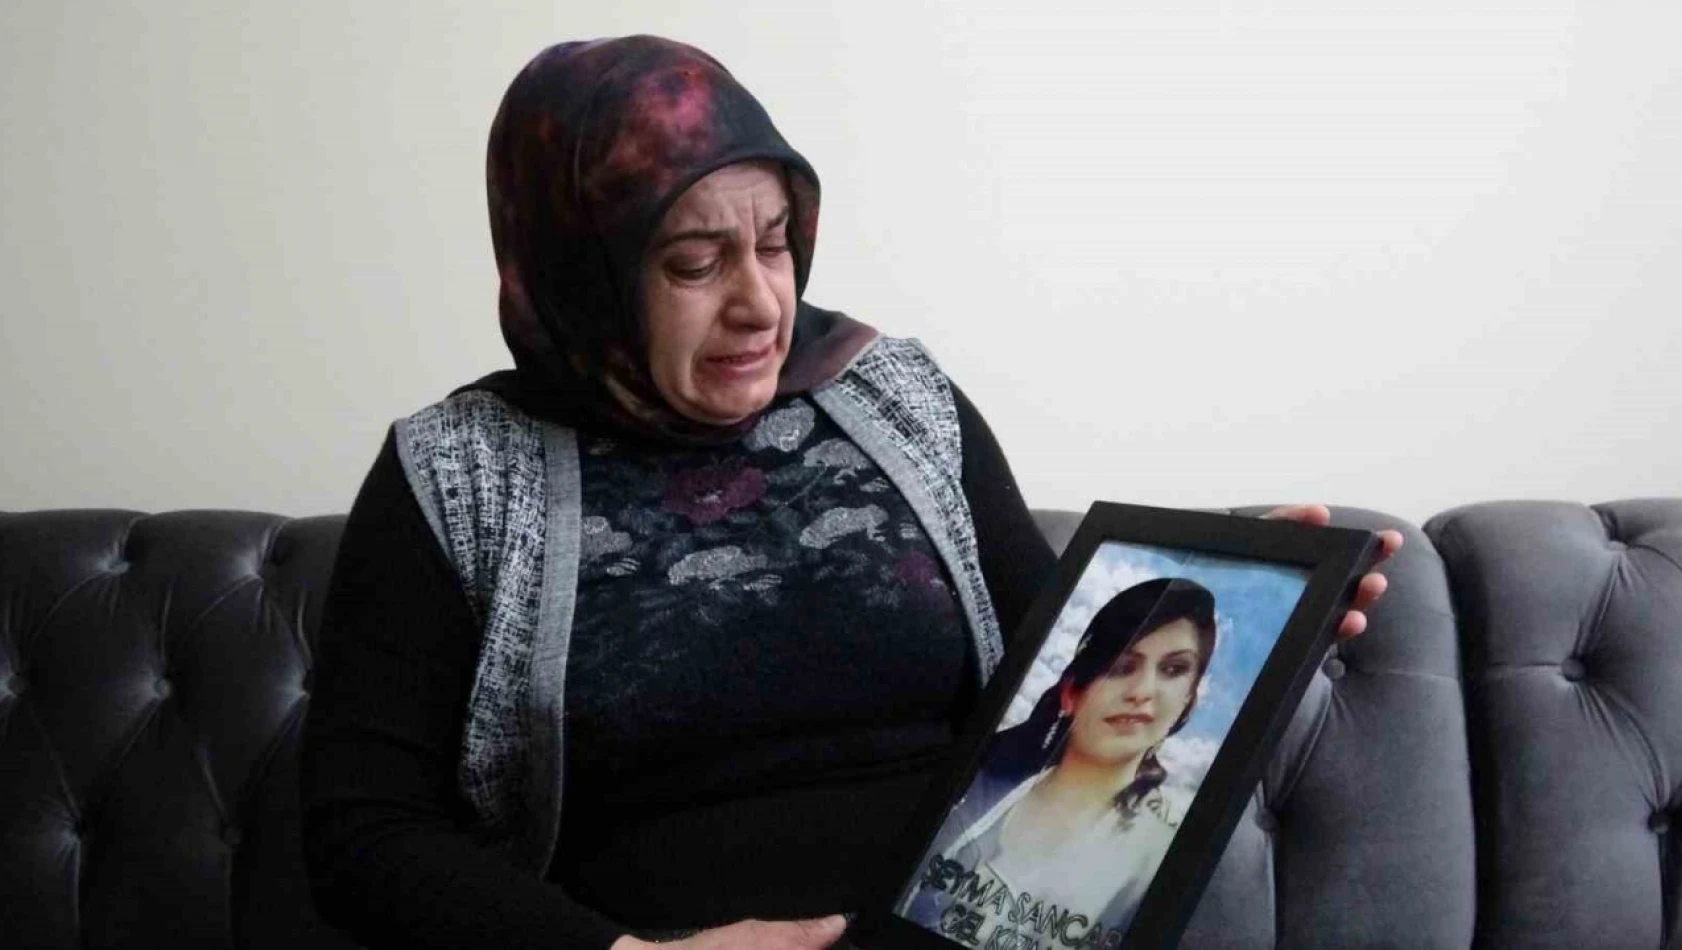 Evladı PKK tarafından kaçırılan anne: 'Kızım burada olsaydı arayıp Kadınlar Günü'nü kutlayacaktım'